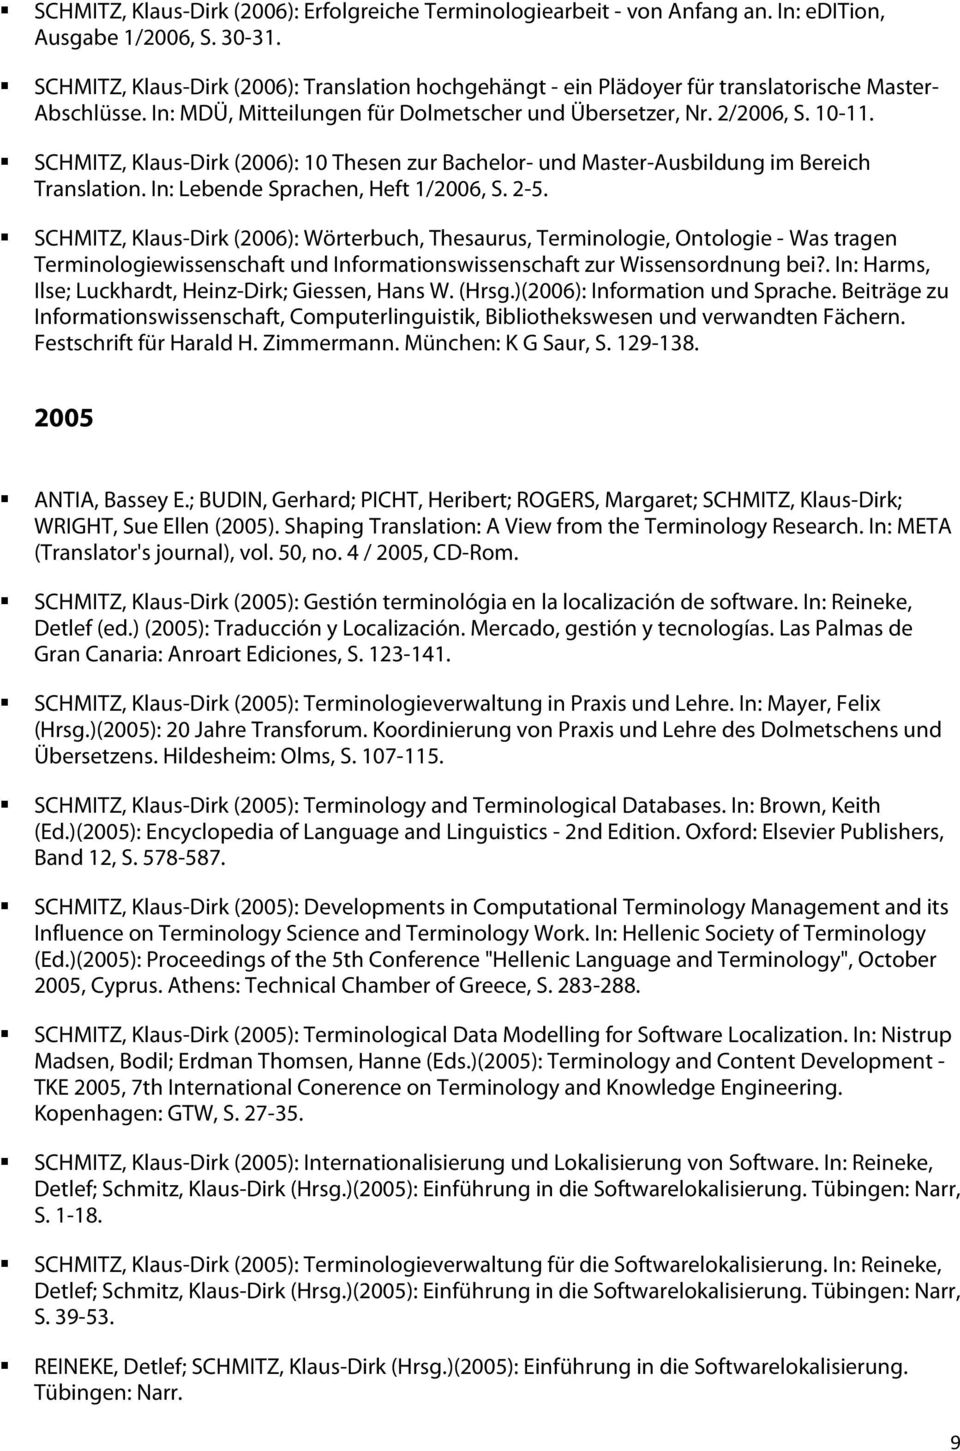 SCHMITZ, Klaus-Dirk (2006): 10 Thesen zur Bachelor- und Master-Ausbildung im Bereich Translation. In: Lebende Sprachen, Heft 1/2006, S. 2-5.